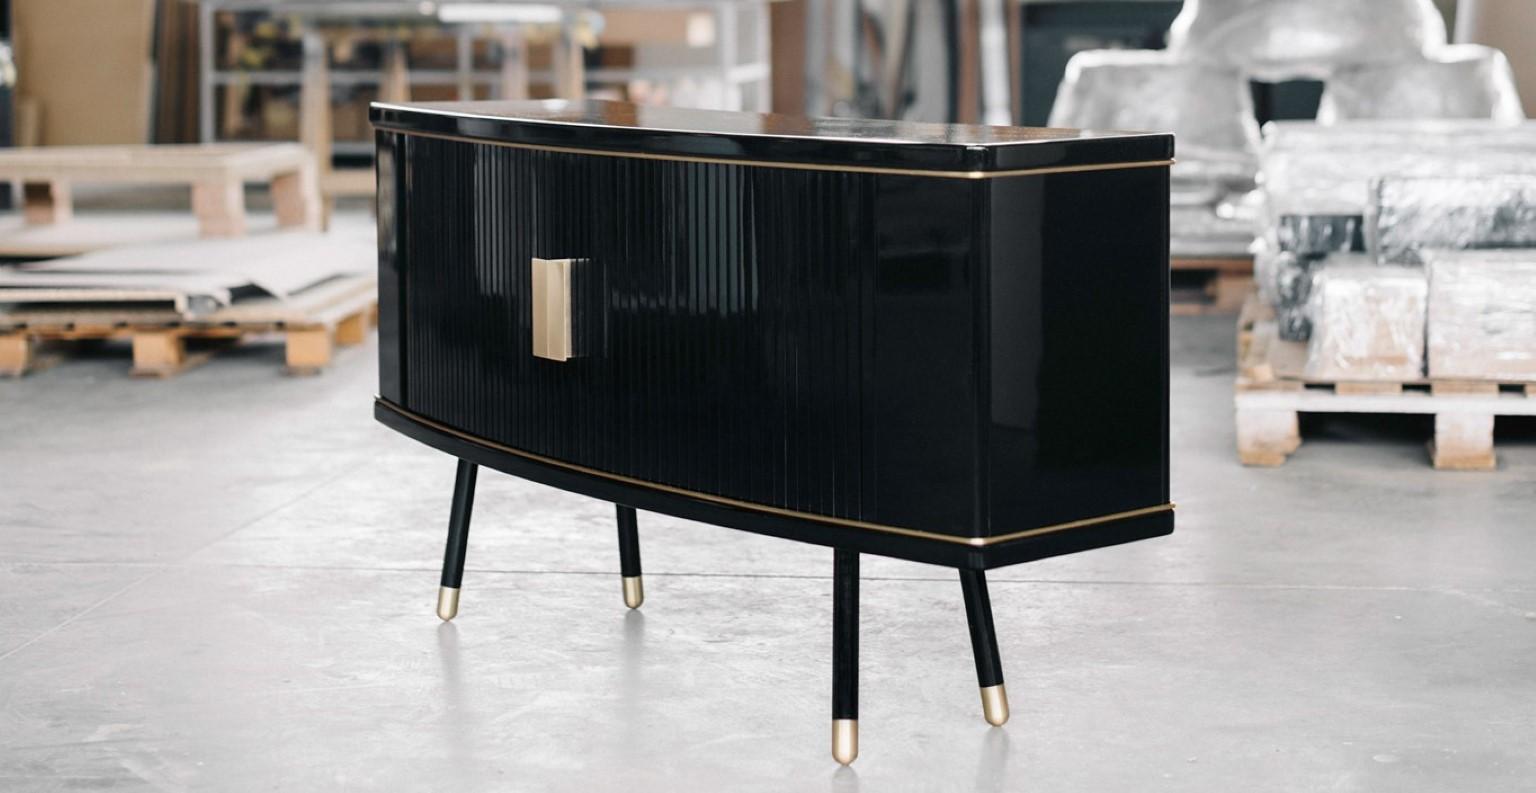 Bespoke cabinet by Magdalena Tekieli.
Dimensions: L 150 x D 50 x H 70 cm,
Materials: brass, metal, oak, piano black gloss finish.

.